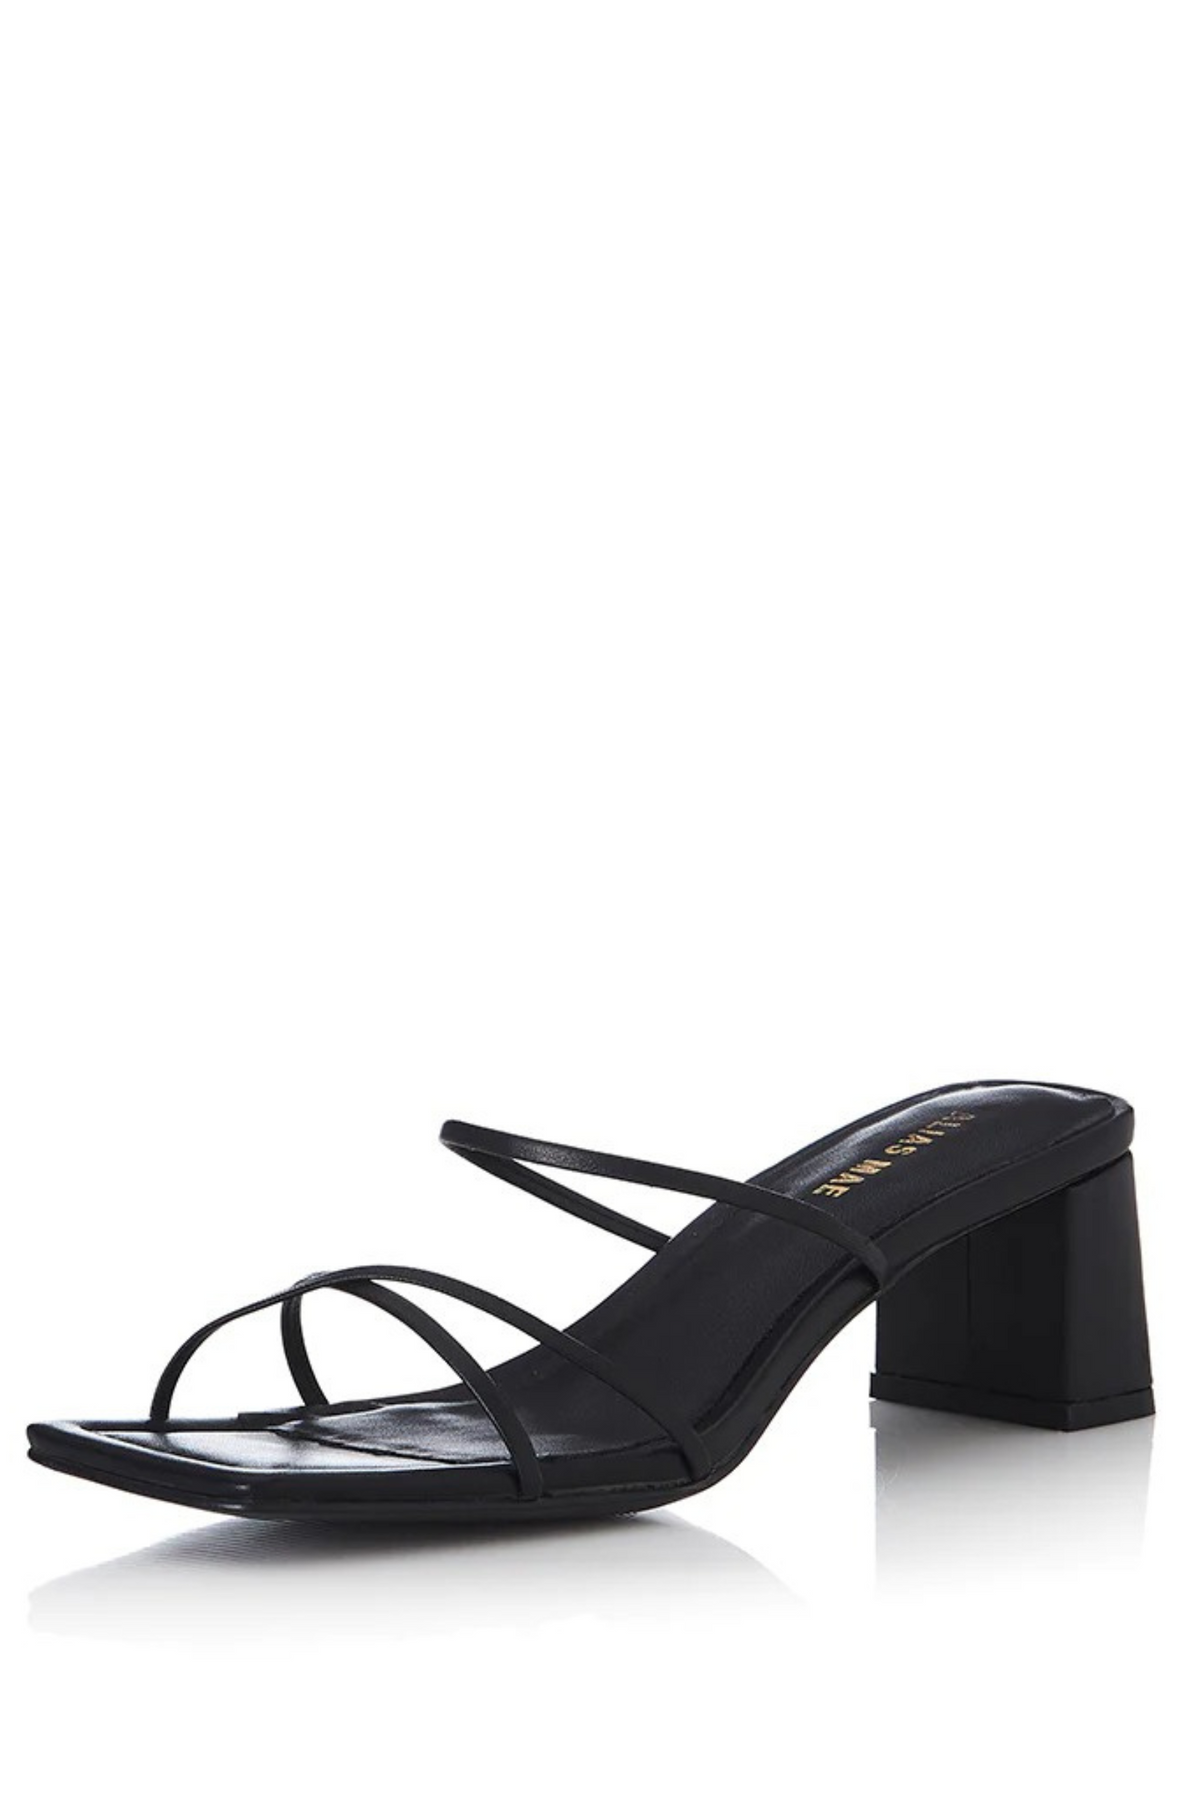 Arabella heel - Black Leather